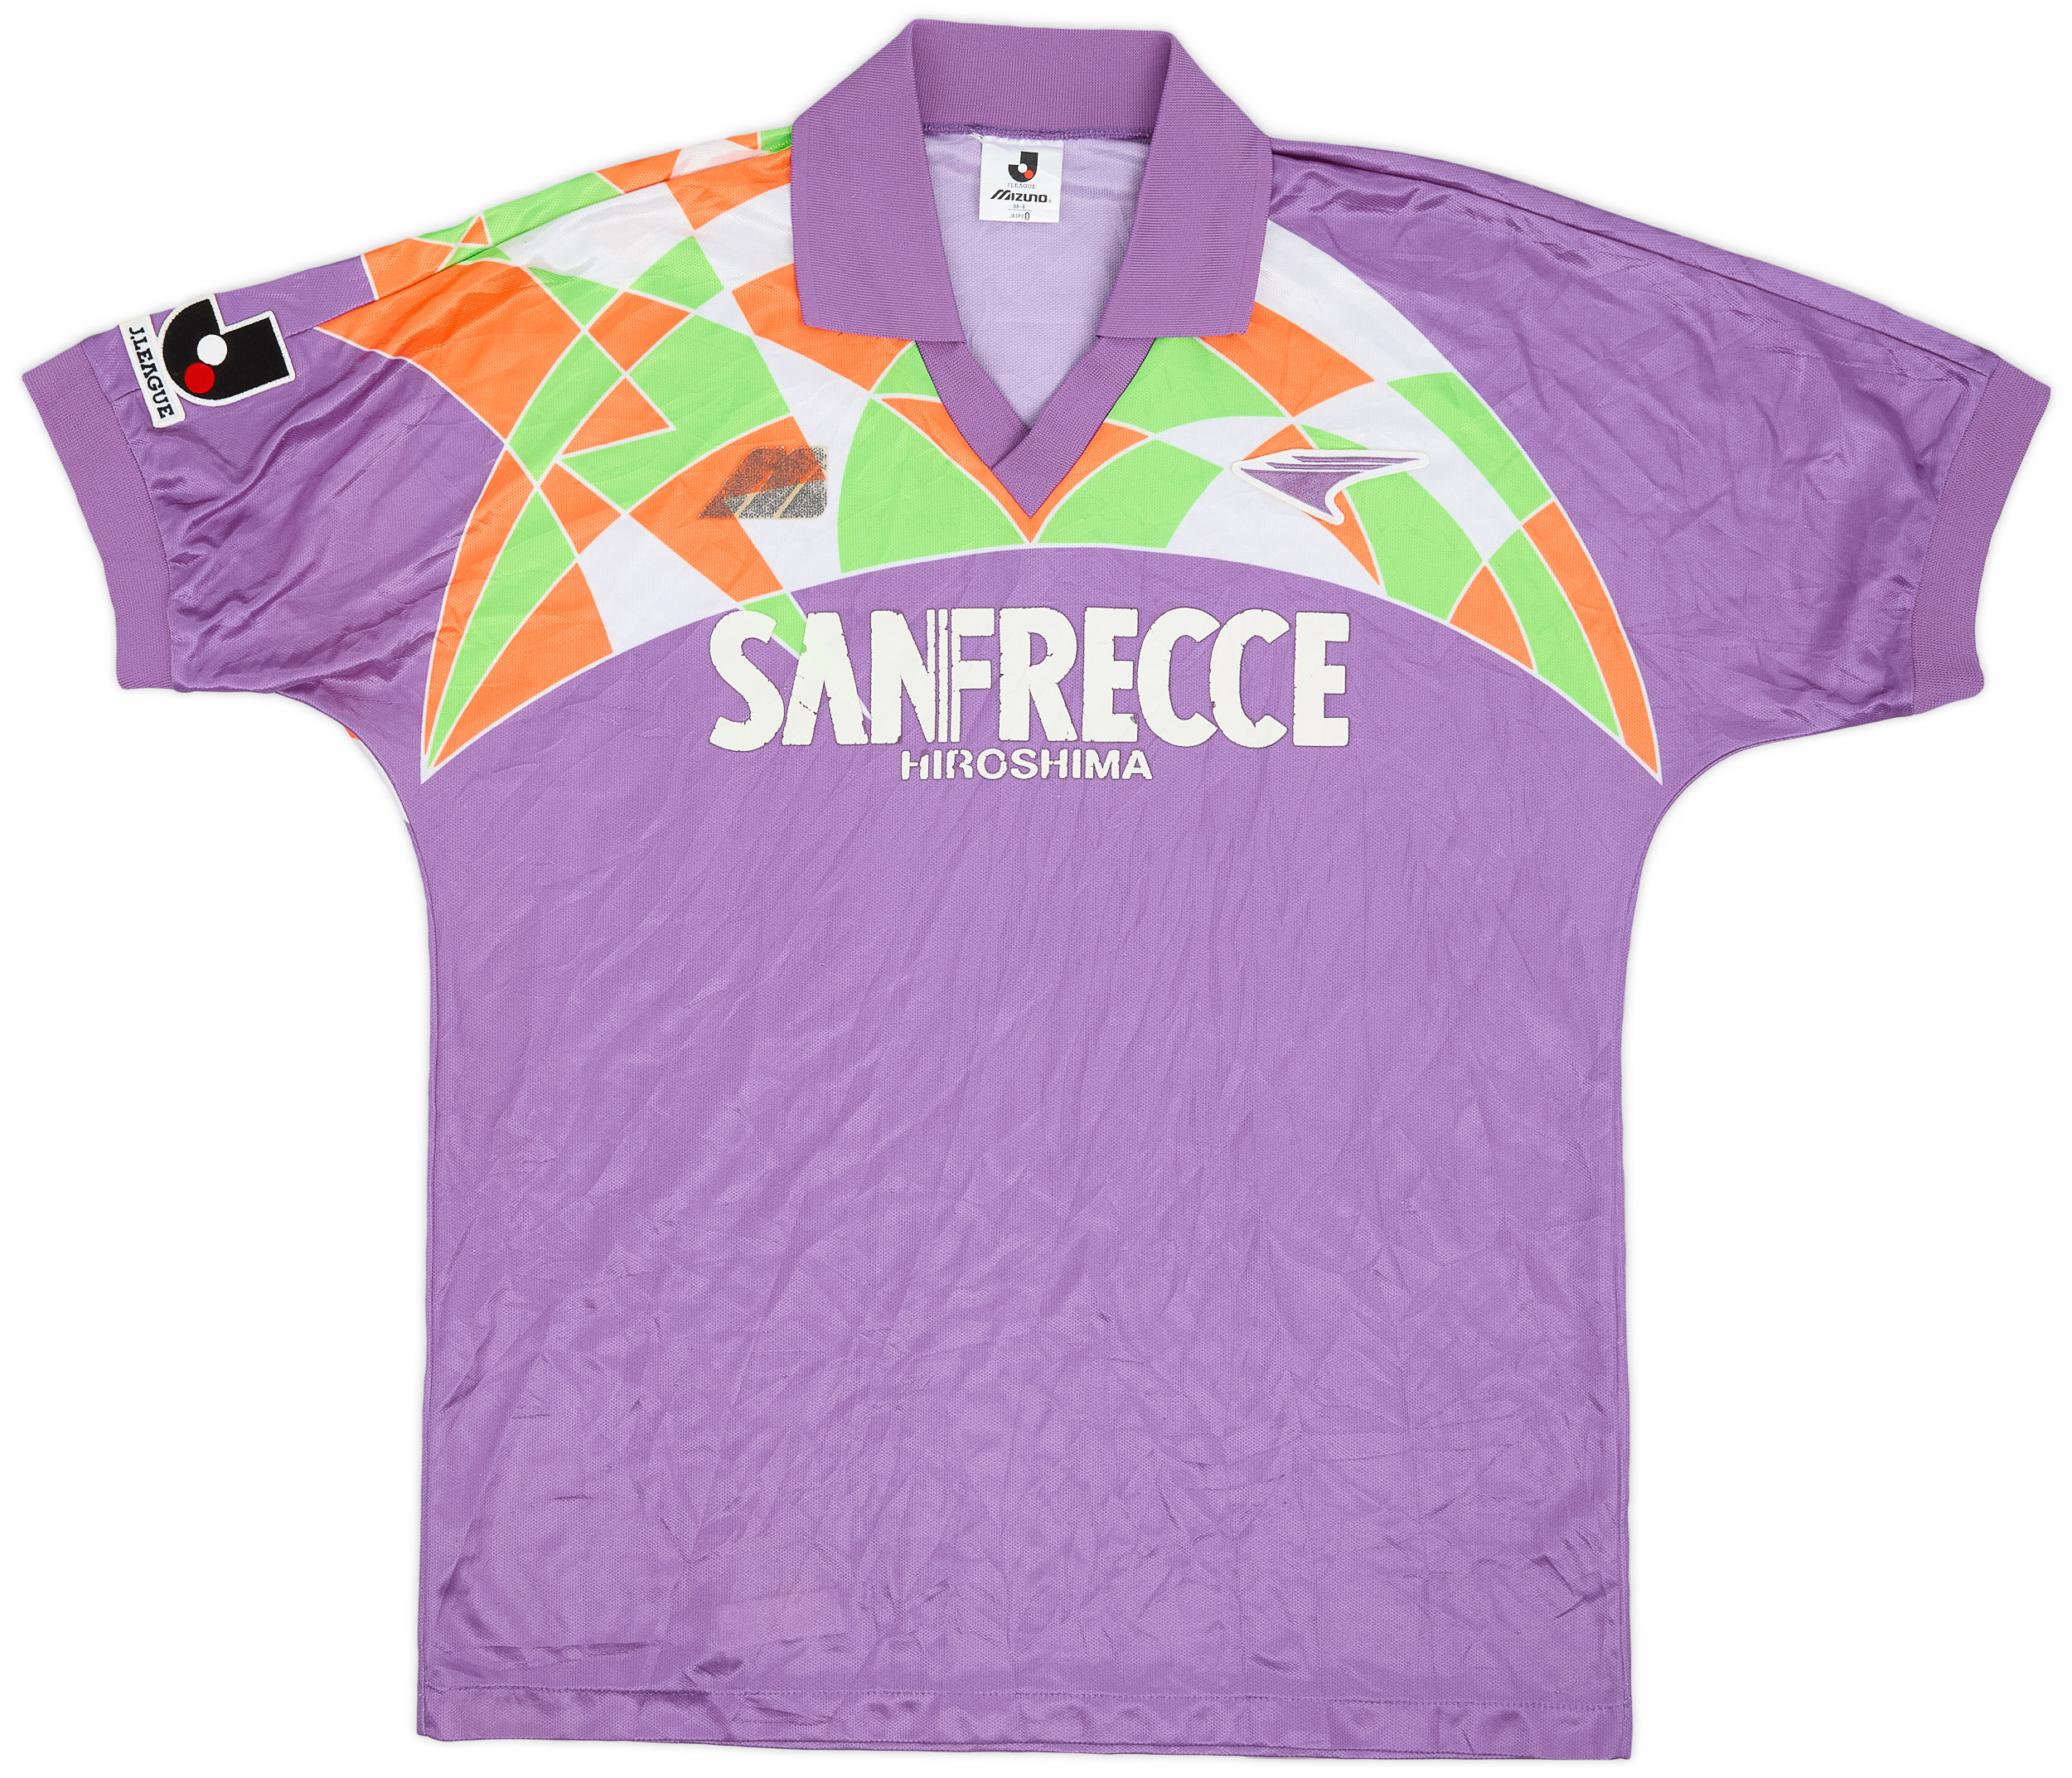 1993 Sanfrecce Hiroshima Home Shirt - 5/10 - ()